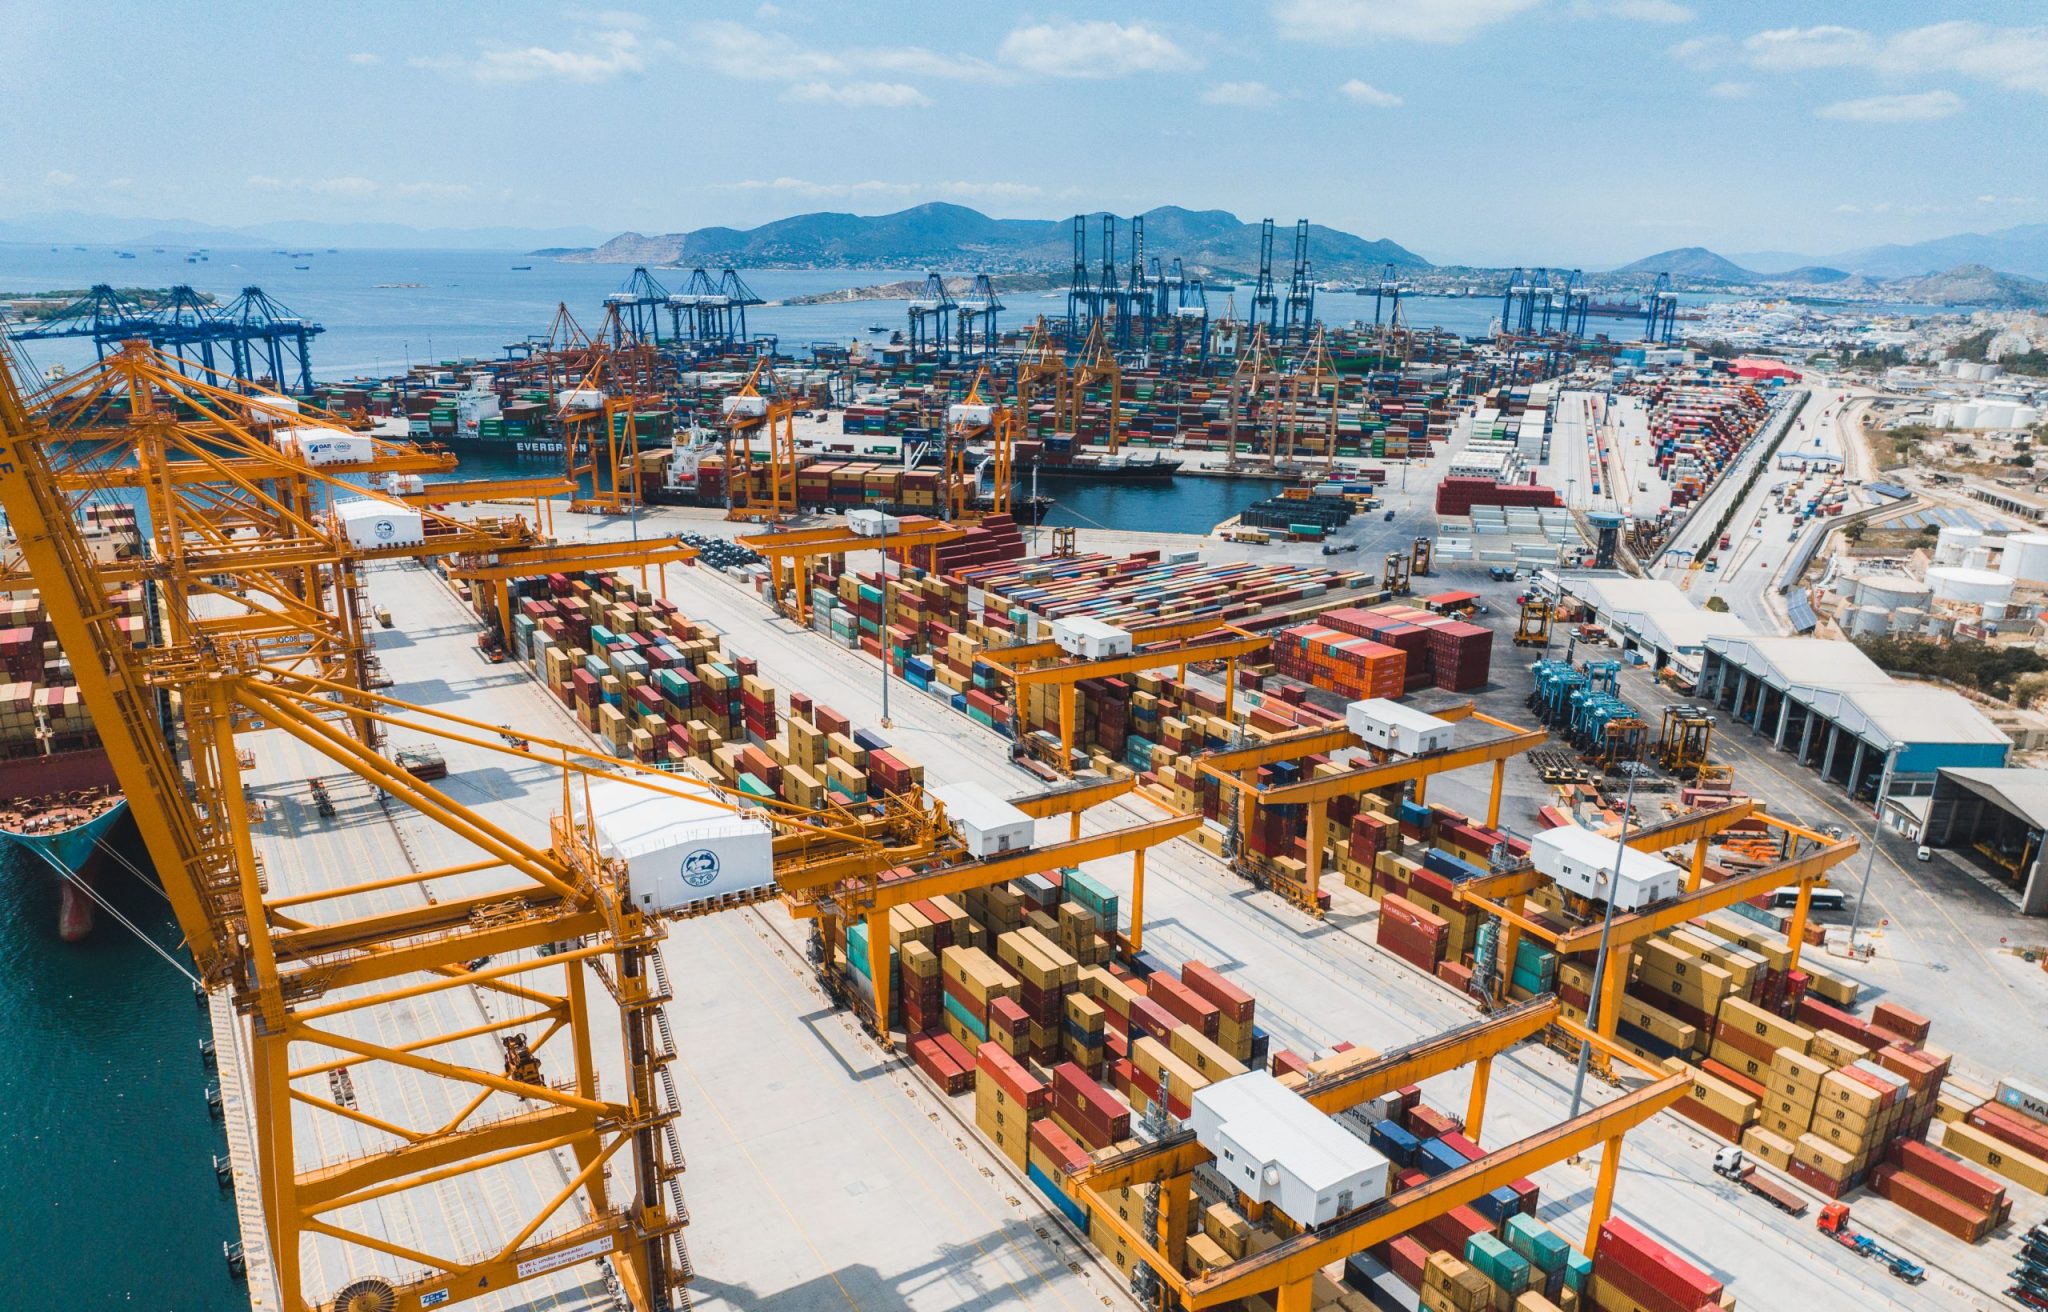 Cosco: Container Traffic Decline at Piraeus Port Continues